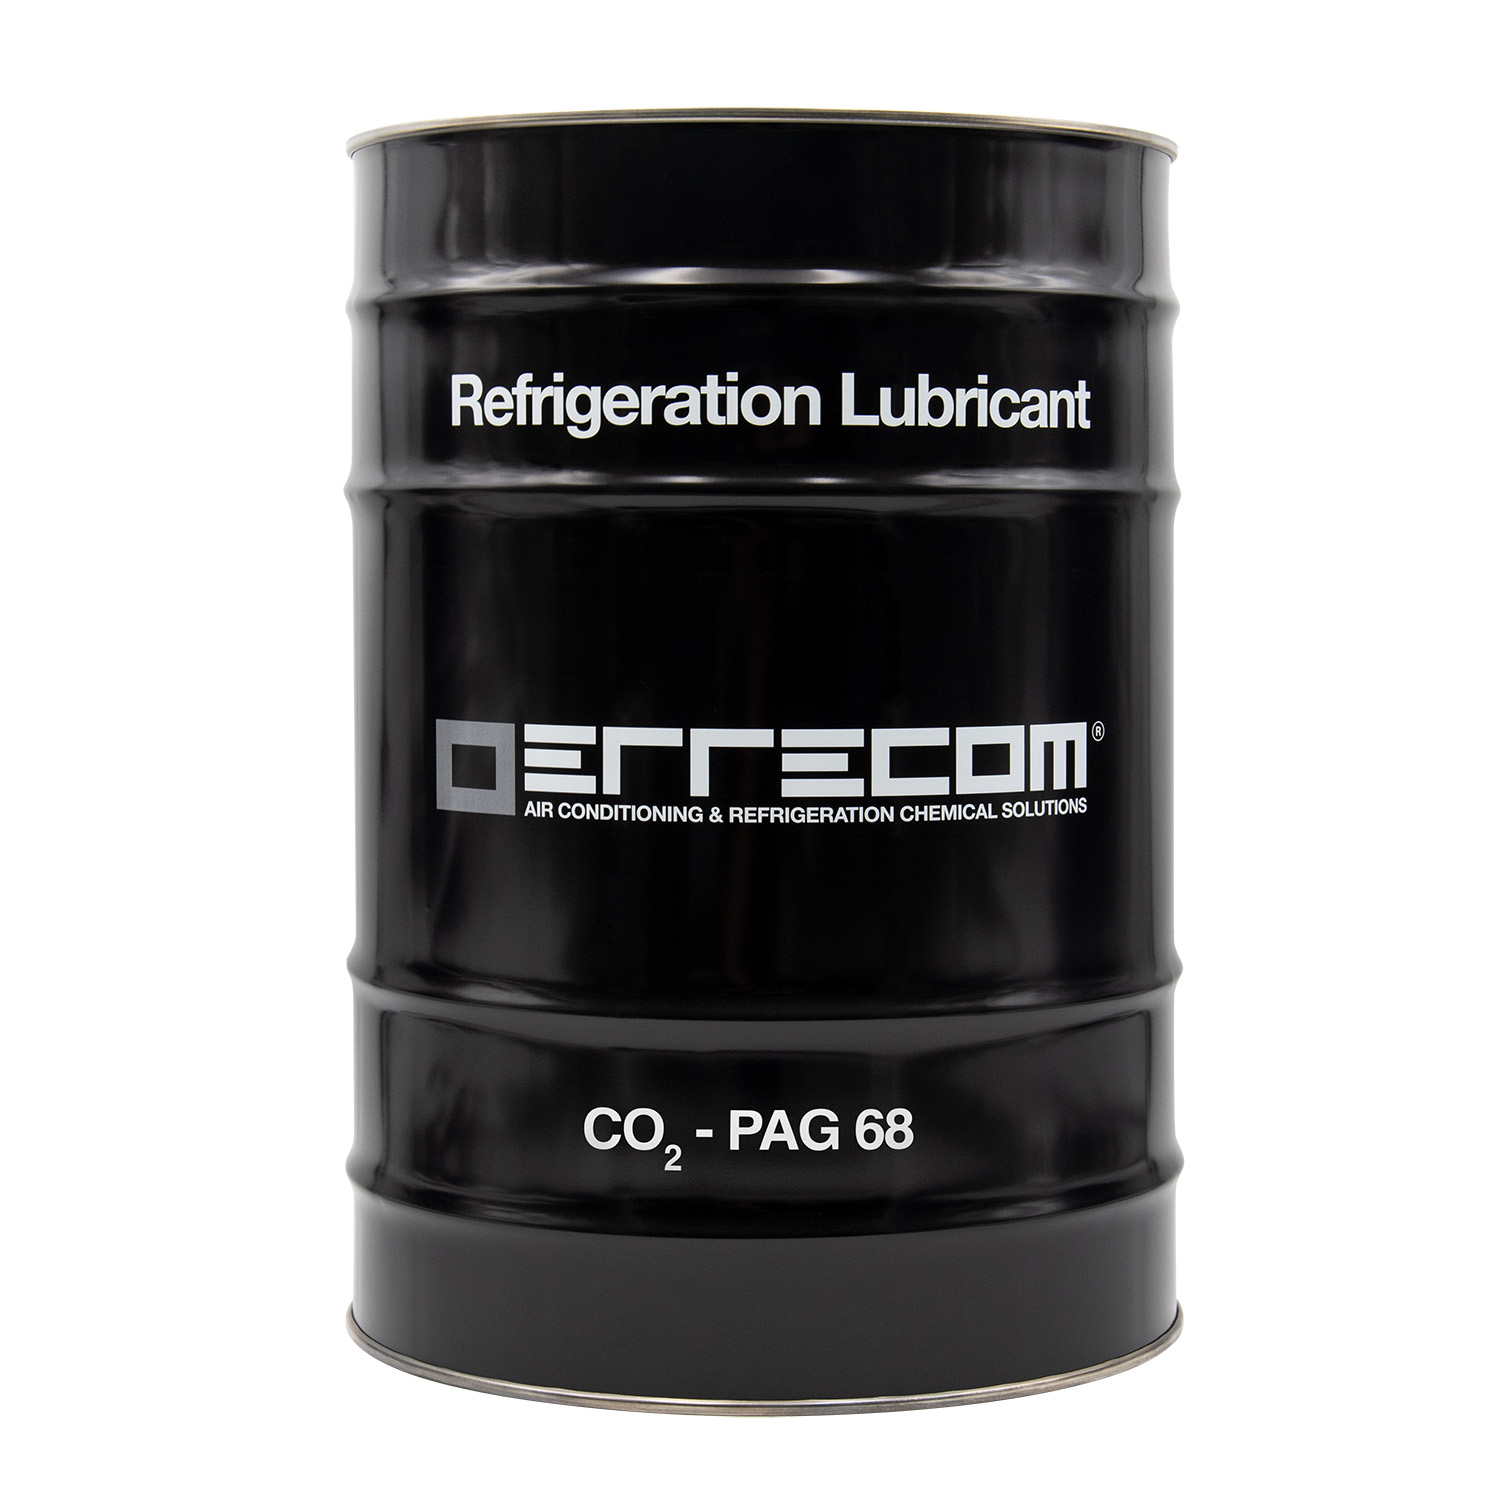 Olio lubrificante Refrigerazione (PAG68) specifico per CO2 viscosità 68 - Tanica in Metallo da 25 litri - Confezione n° 1 pz. - Foto 1 